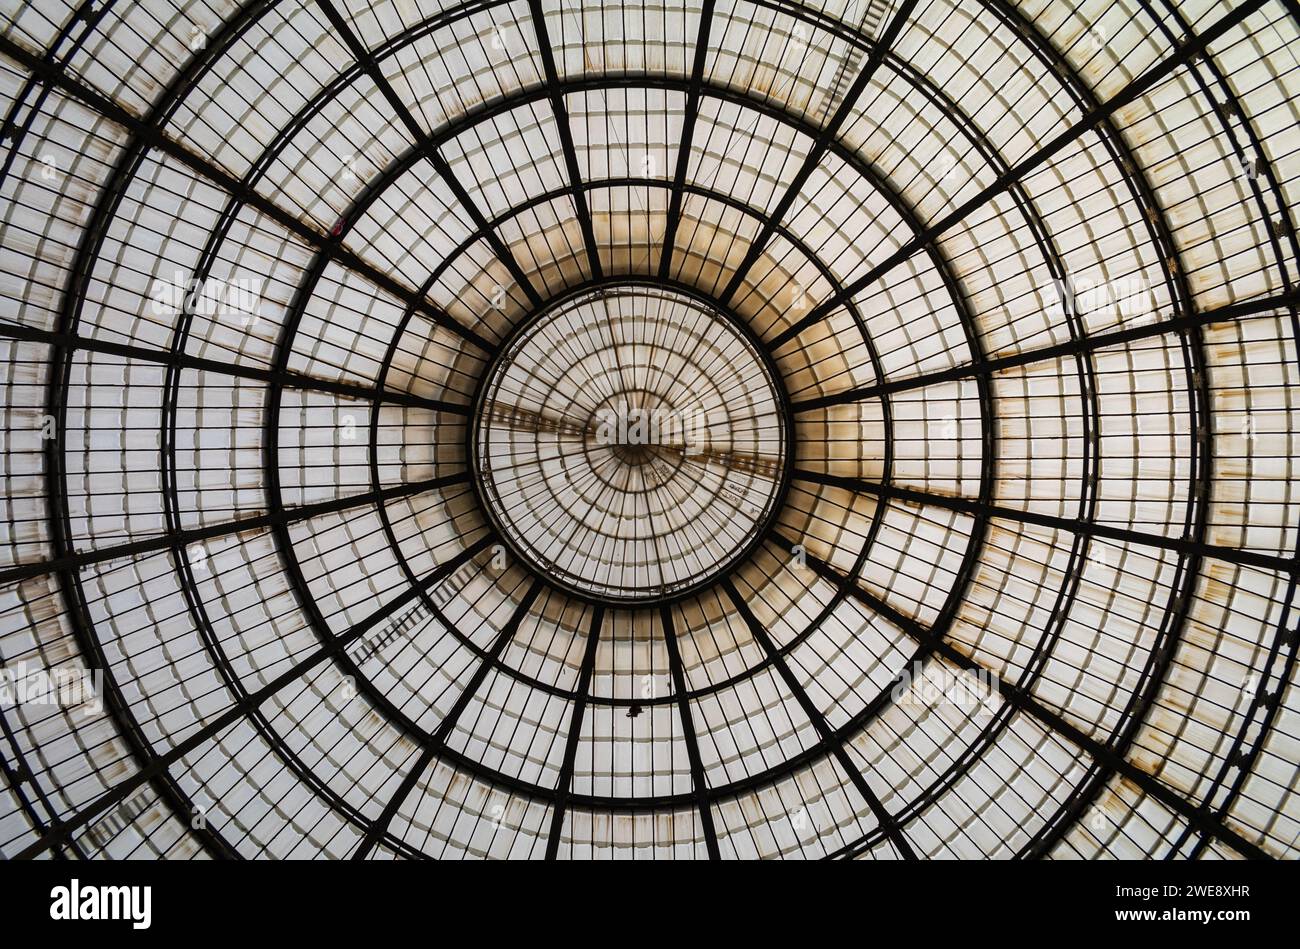 La splendida cupola di vetro nel cuore della Galleria Vittorio Emanuele II in Piazza del Duomo fuori dal Duomo di Milano, Italia. Foto Stock